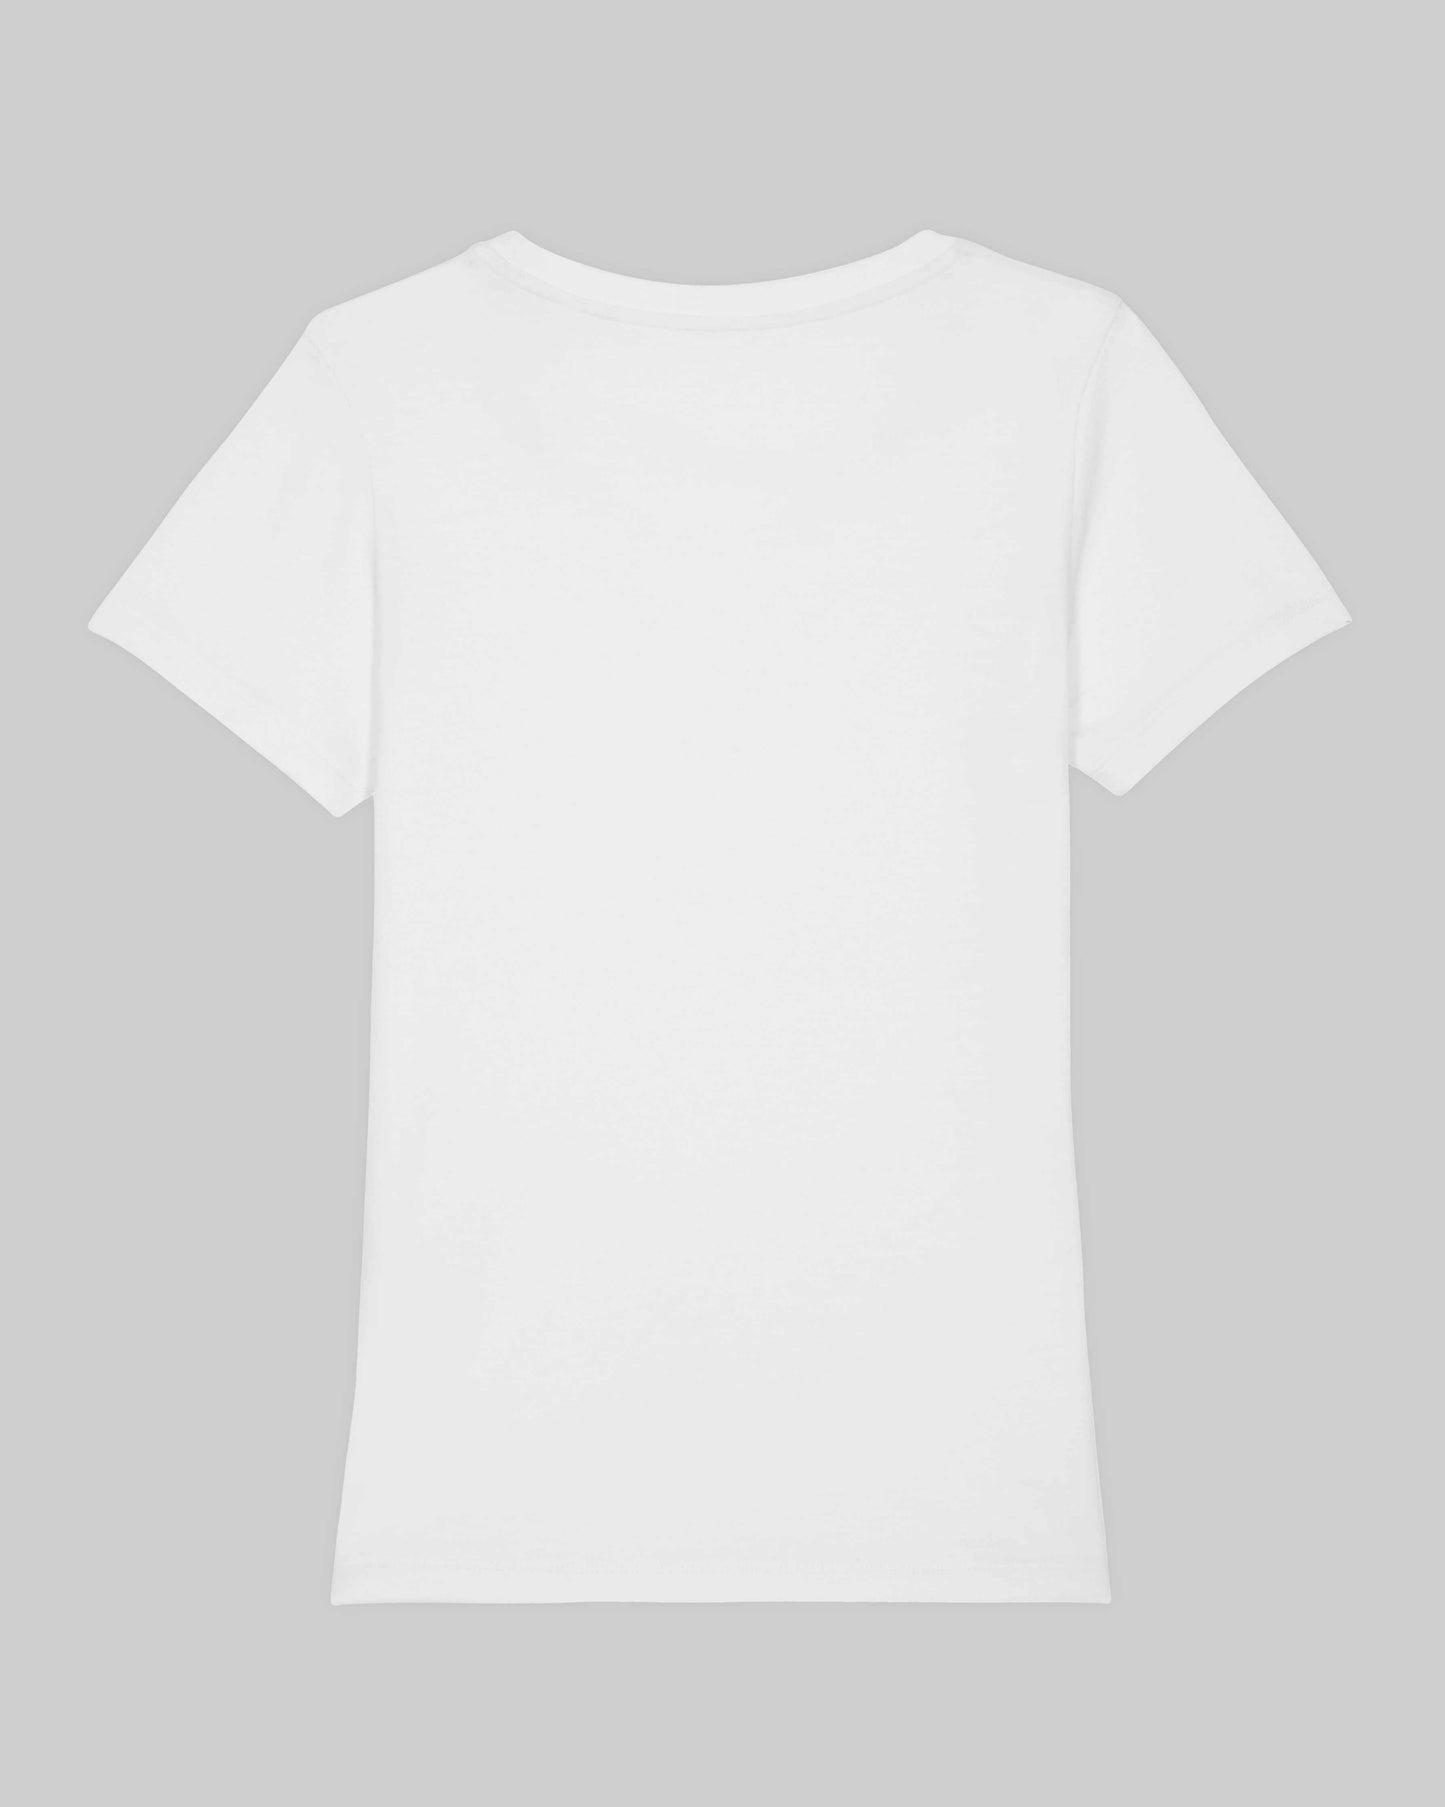 EINHORST® Organic Shirt tailliert in "Weiß" mit dem Motiv "equal Regenbogen" in der Kombination bunter Regenbogen mit schwarzer Schrift, Bild von Shirt von hinten